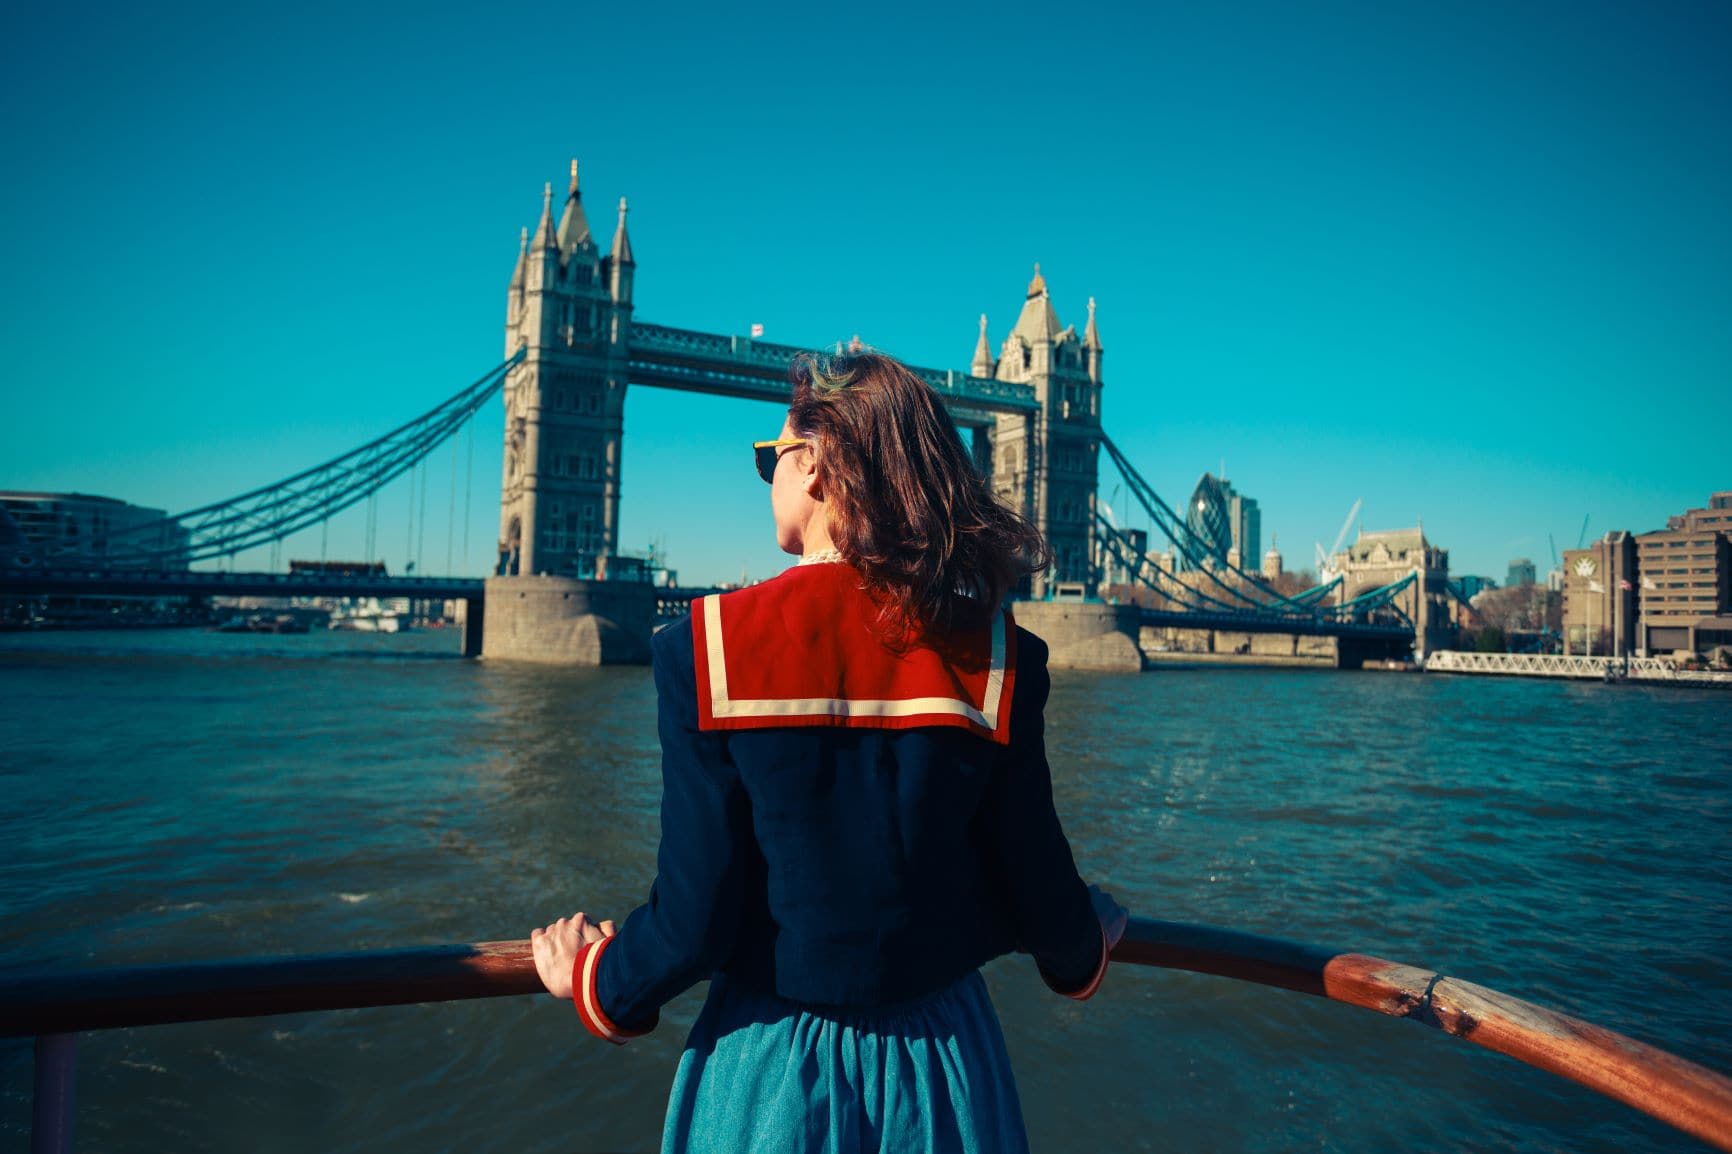 Frau an der Reeling eines Ausflugsbootes auf der Themse in London